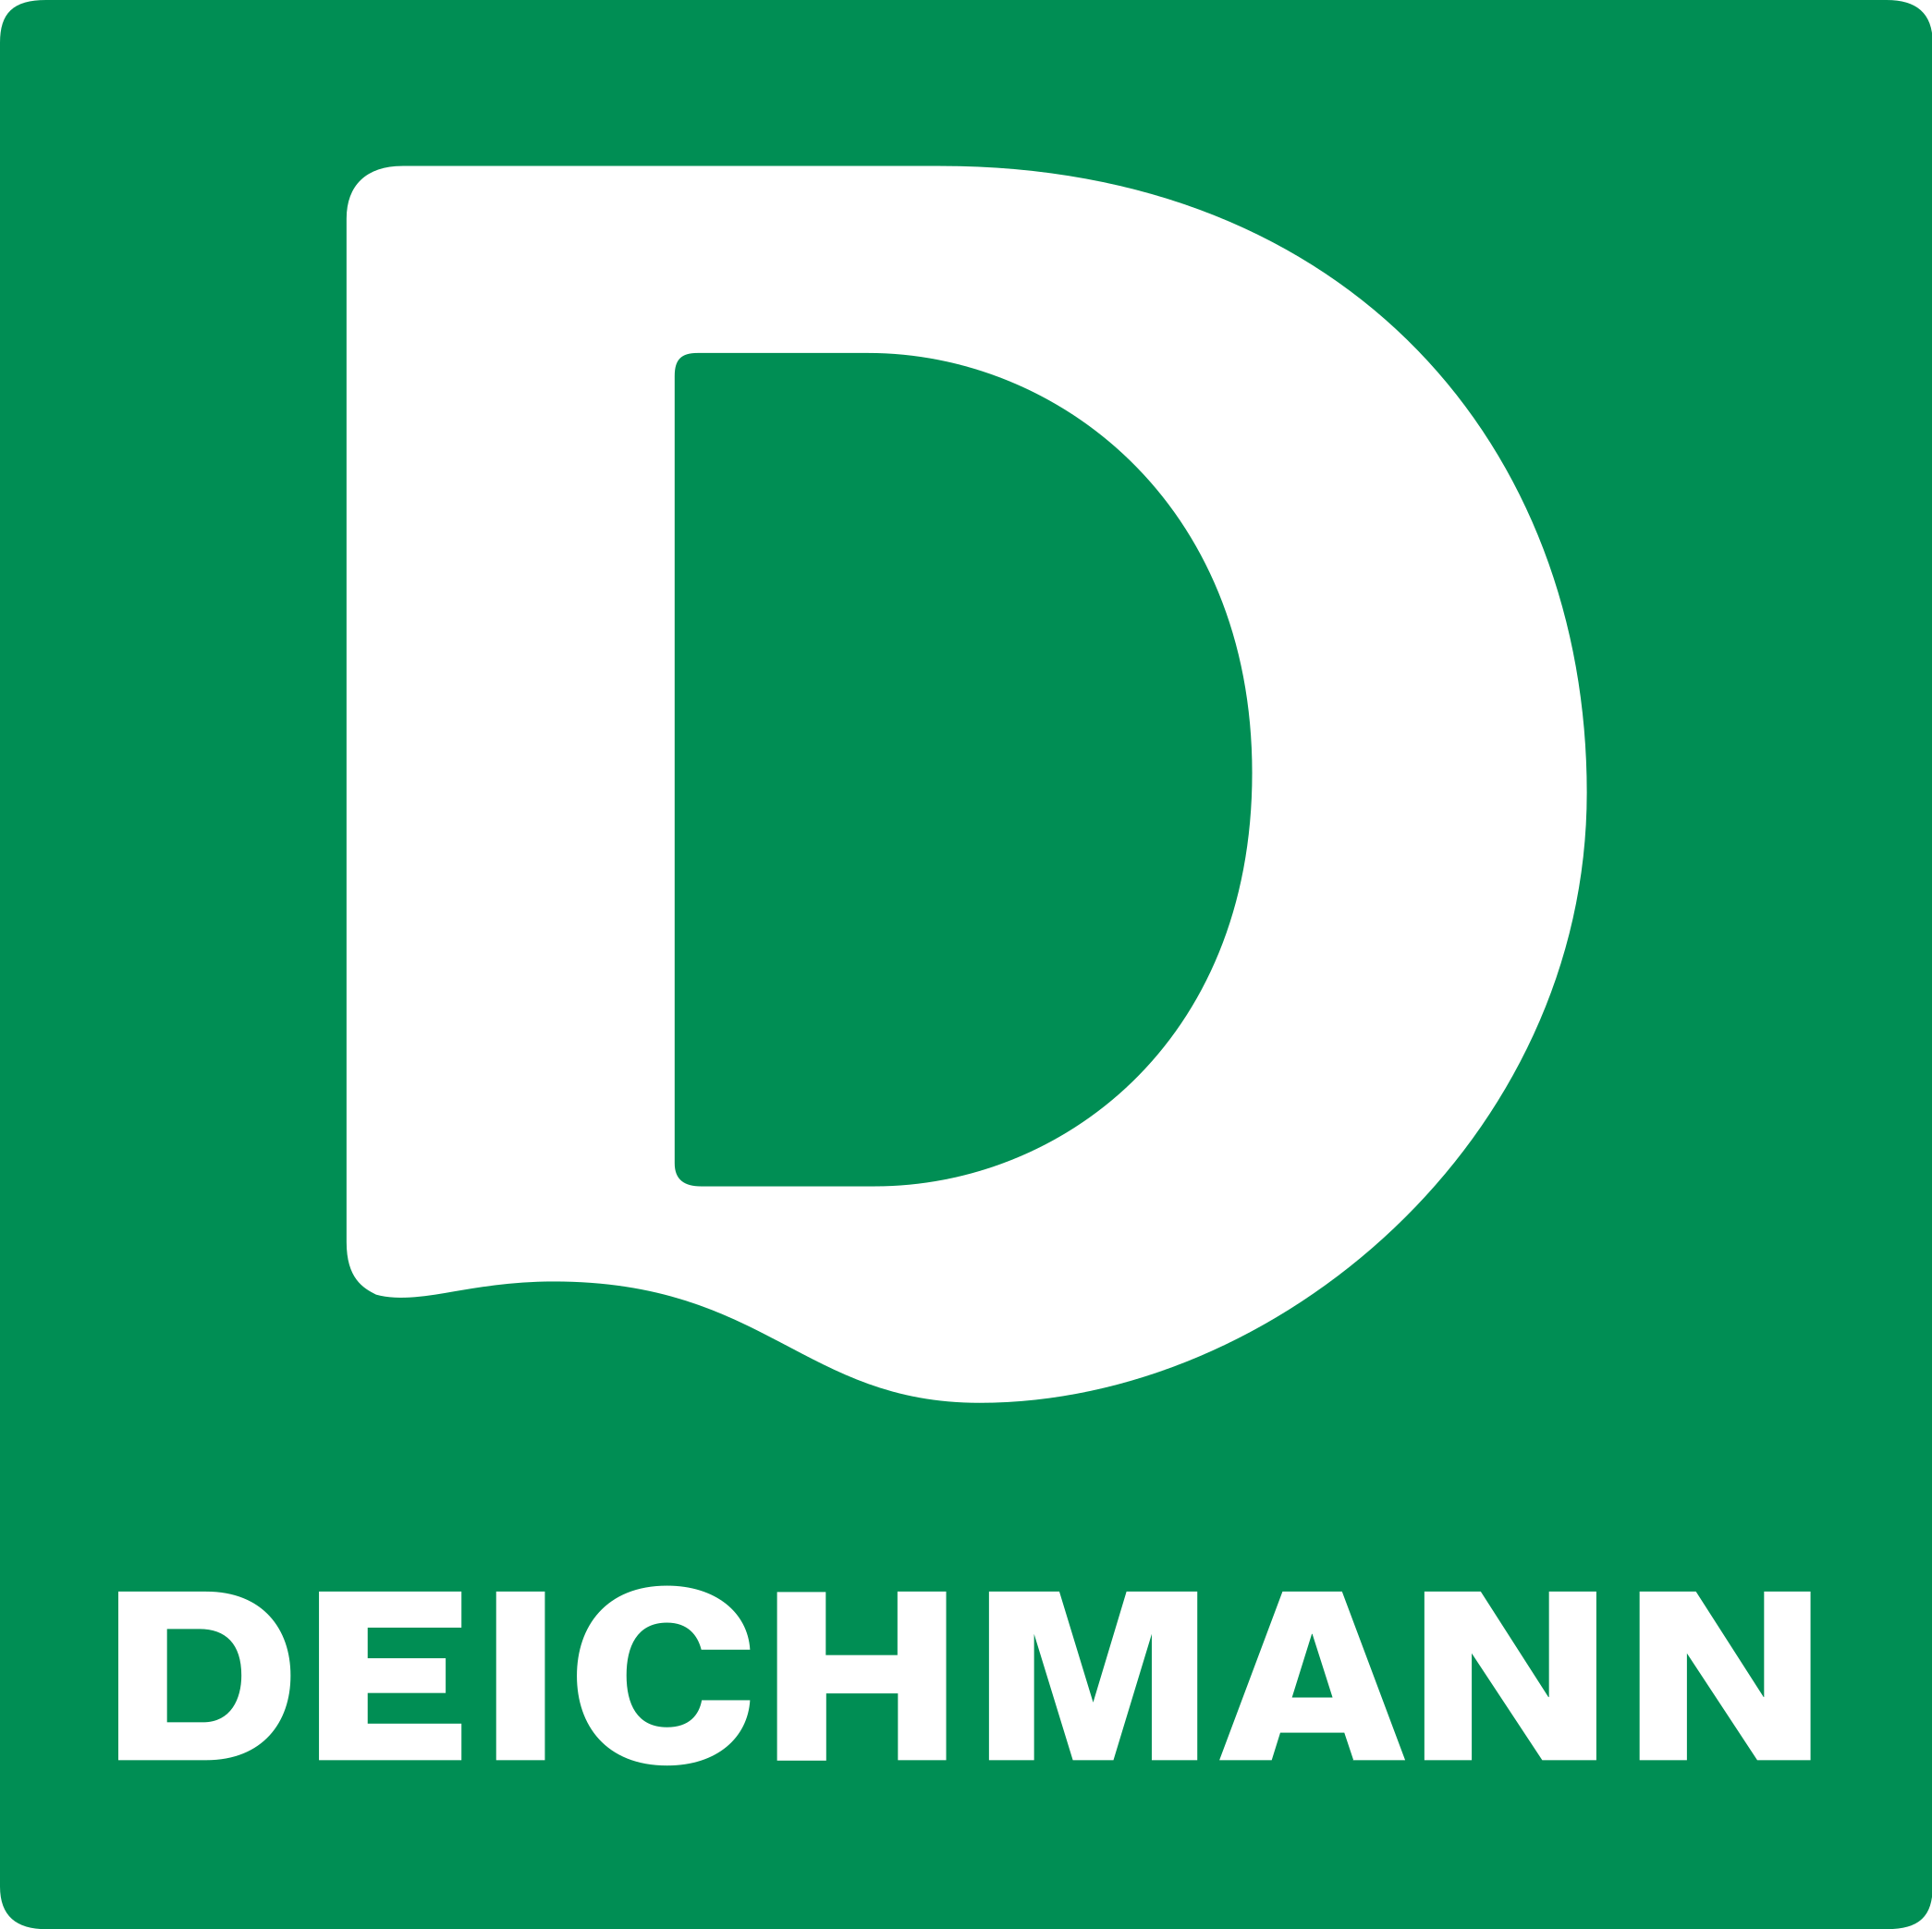 Forvent det Hovedsagelig Brokke sig File:Deichmann logo.svg - Wikimedia Commons